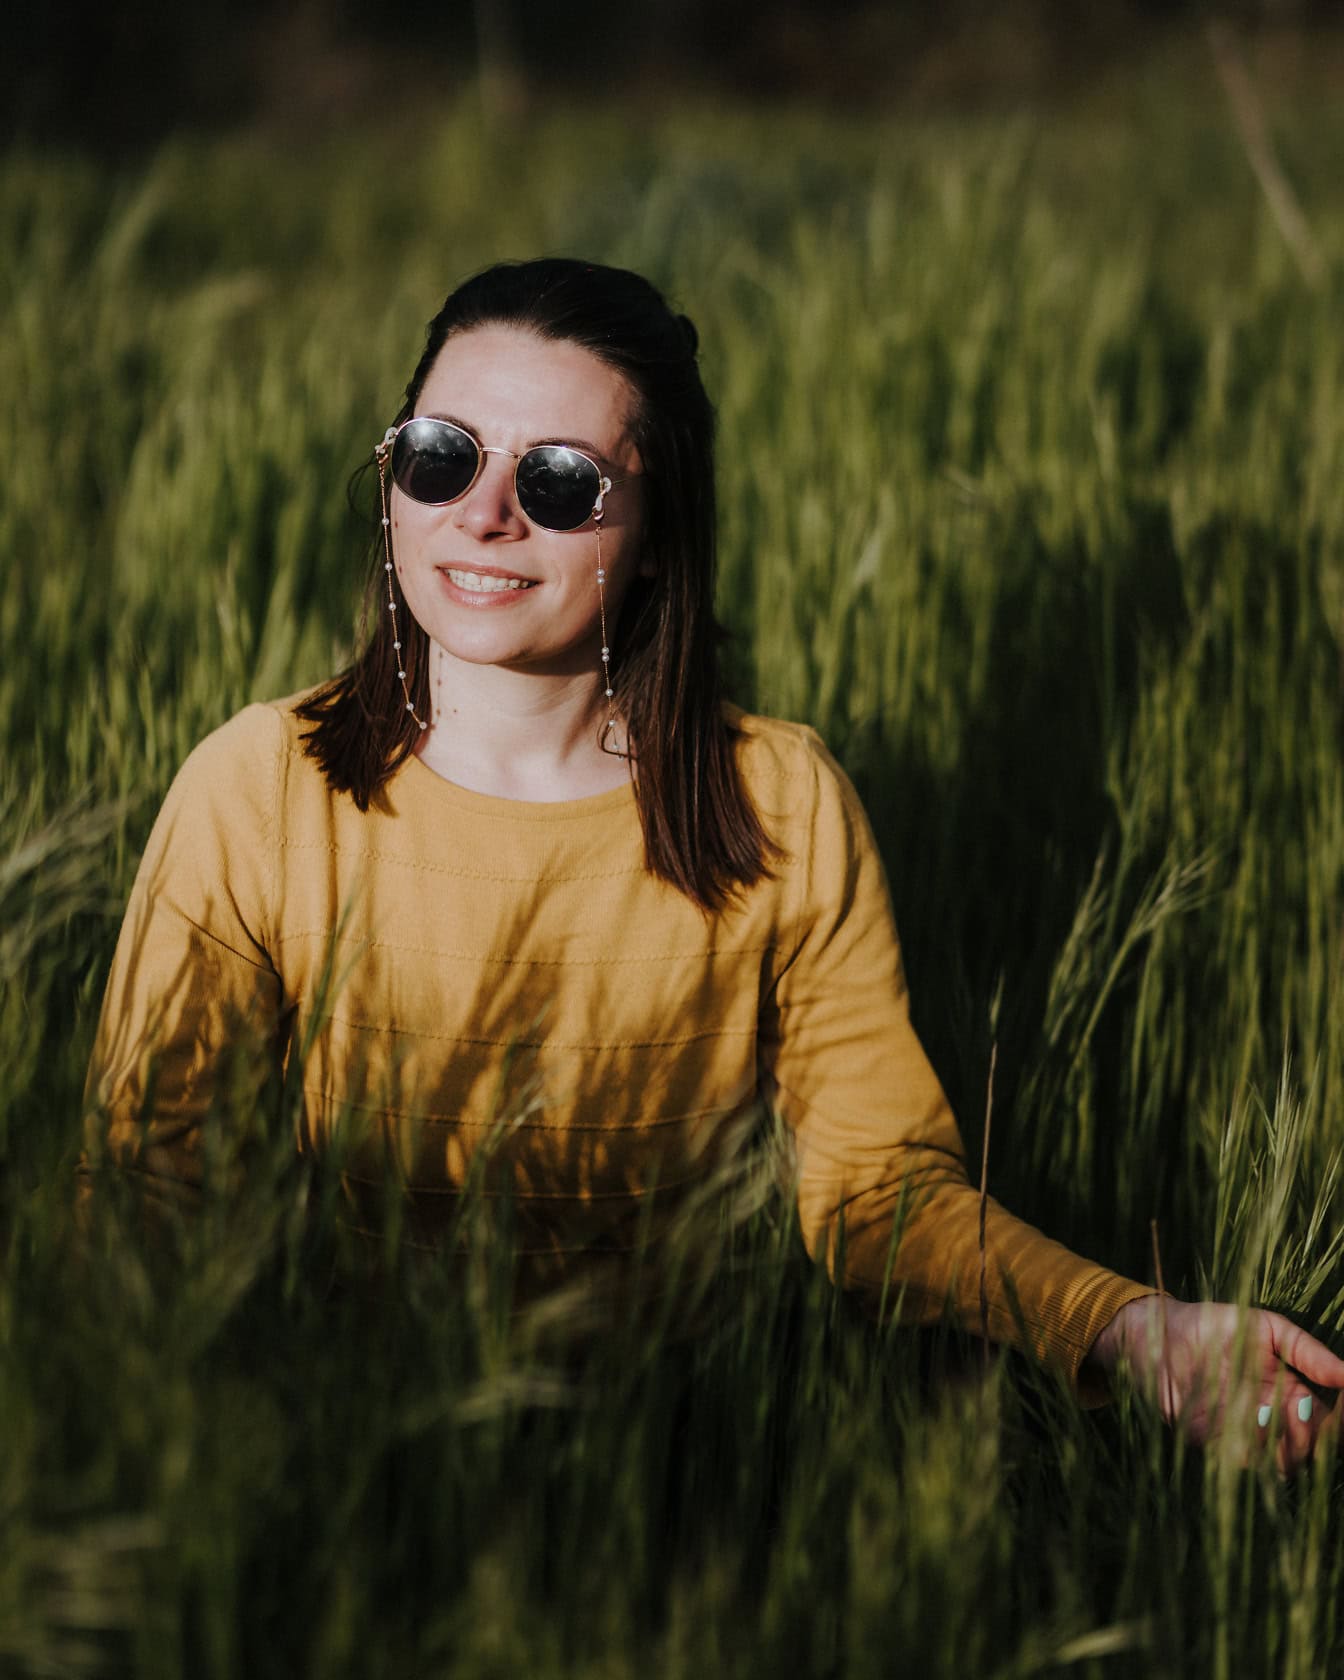 背の高い草むらでジョン・レノン風のサングラスをかけた美しい微笑む女性の肖像画